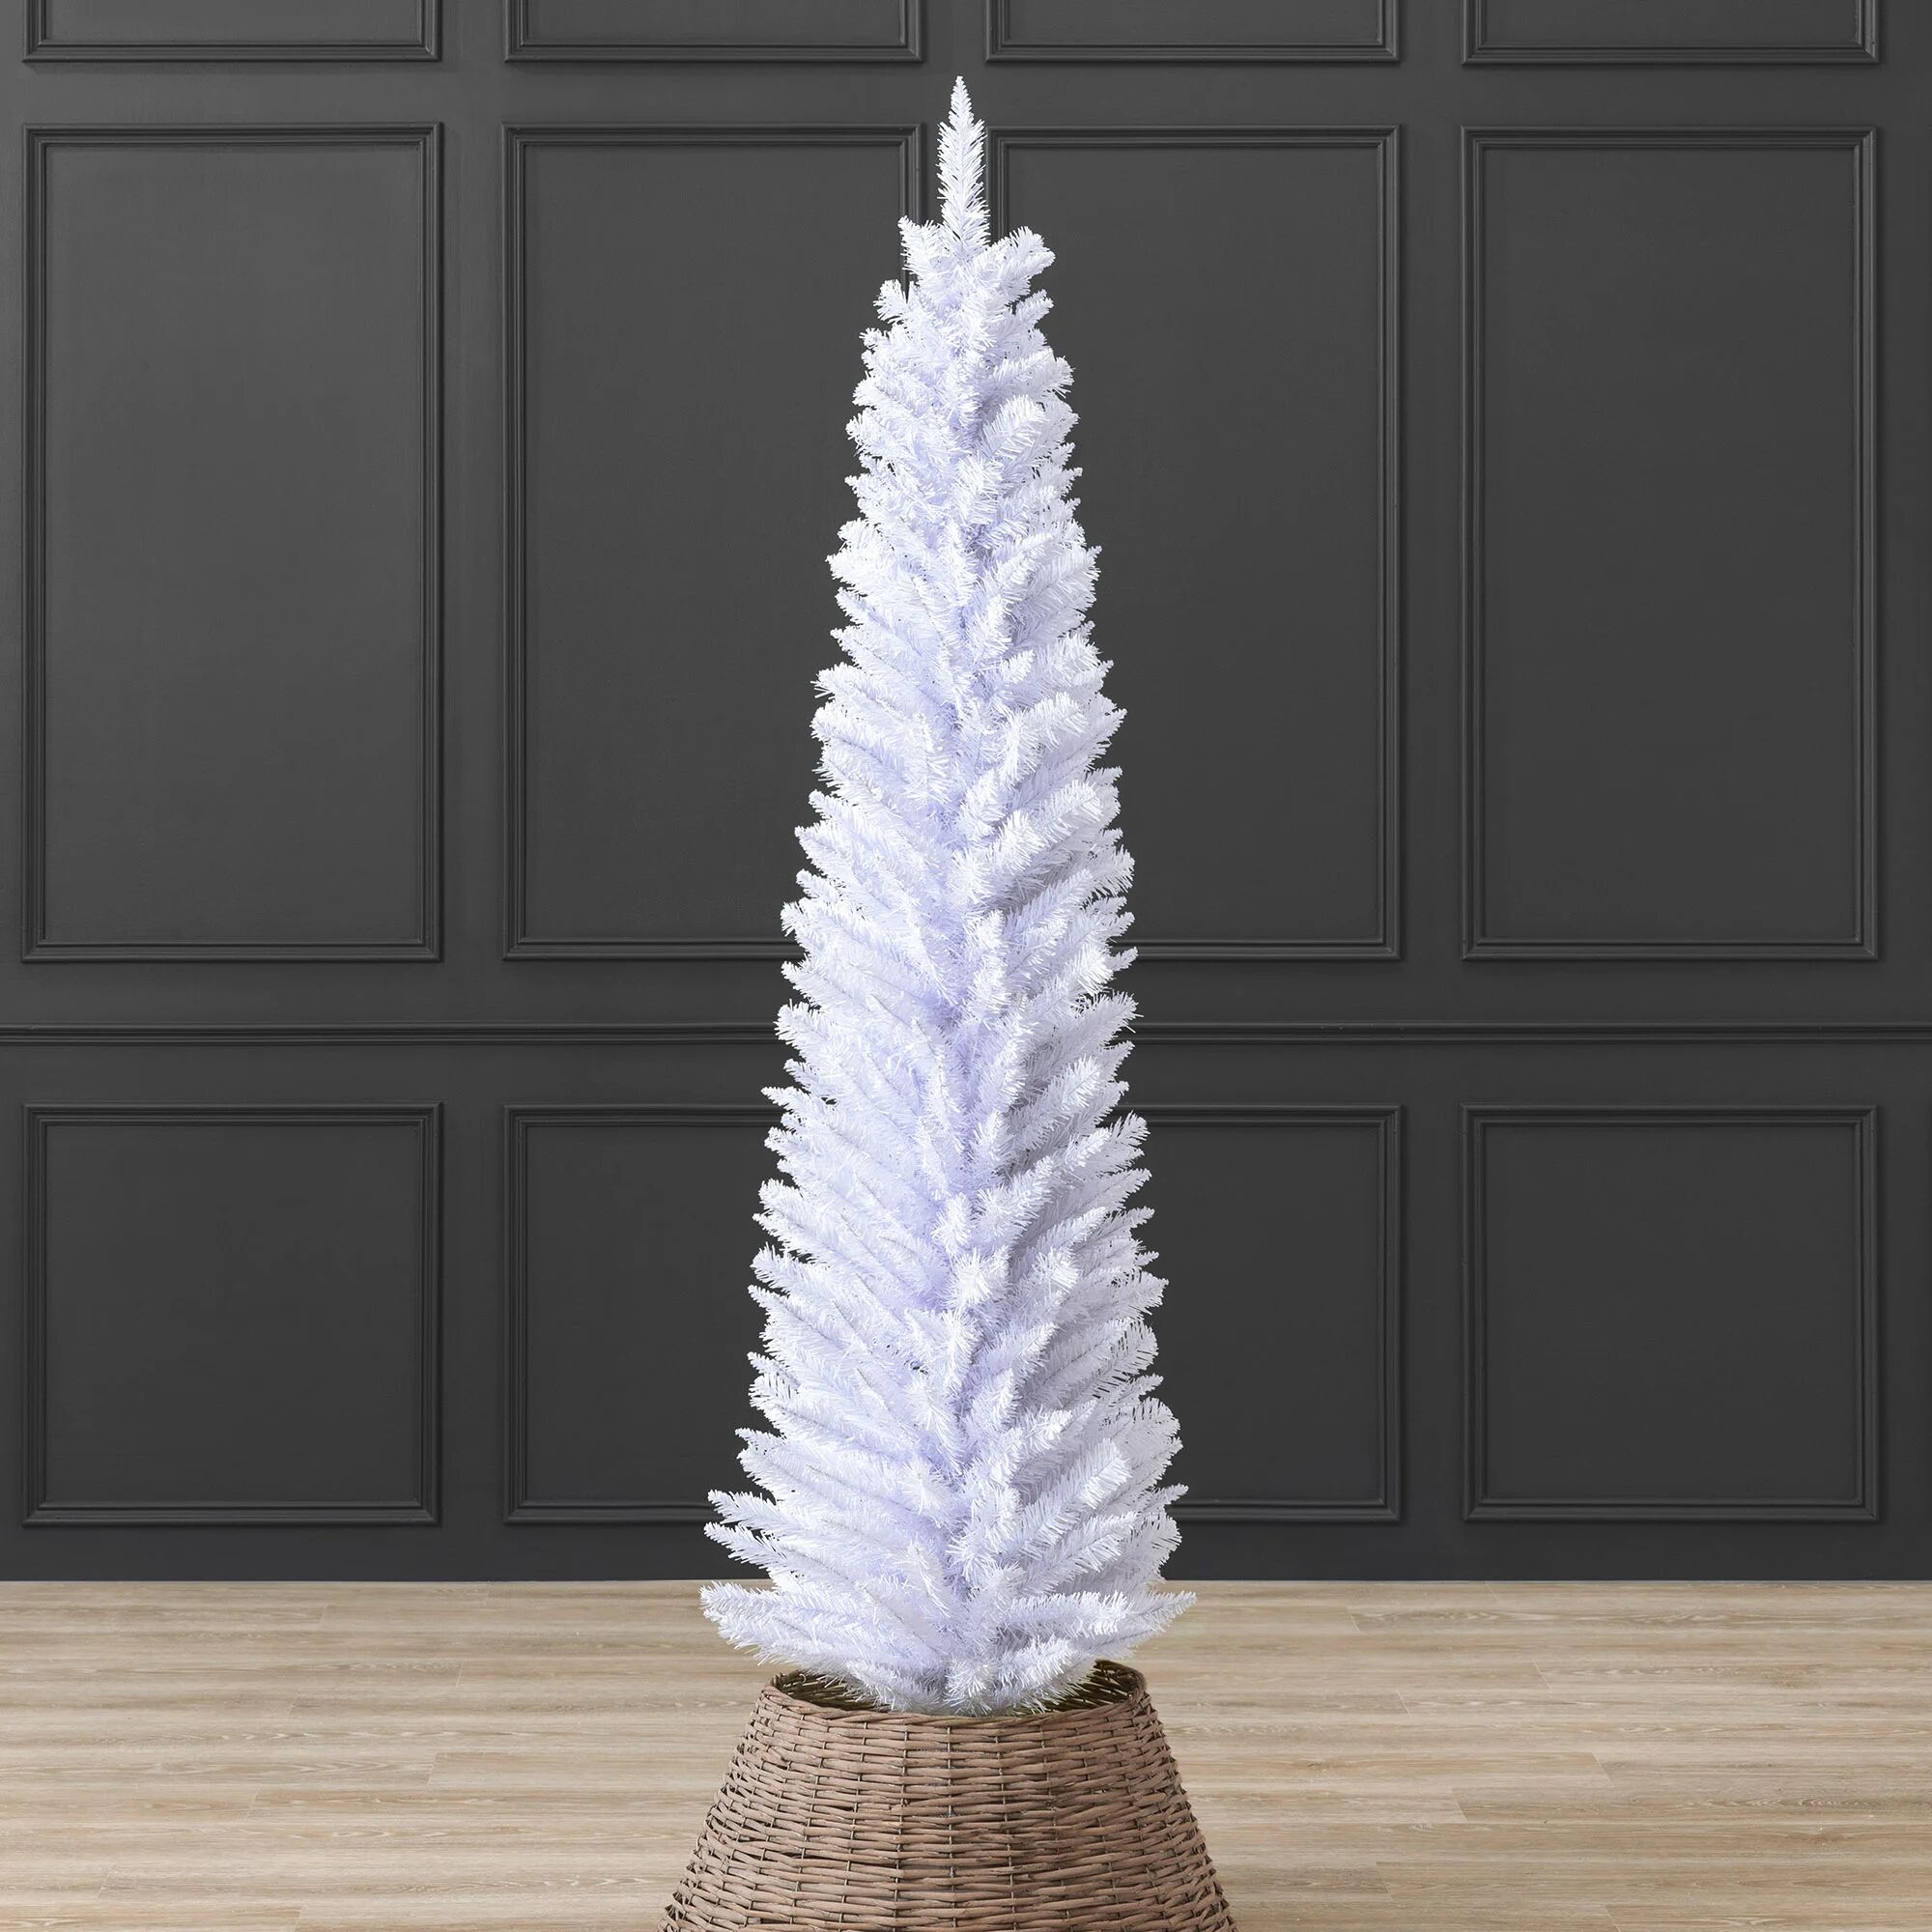 Christow White Pencil Christmas Tree (6ft) - White